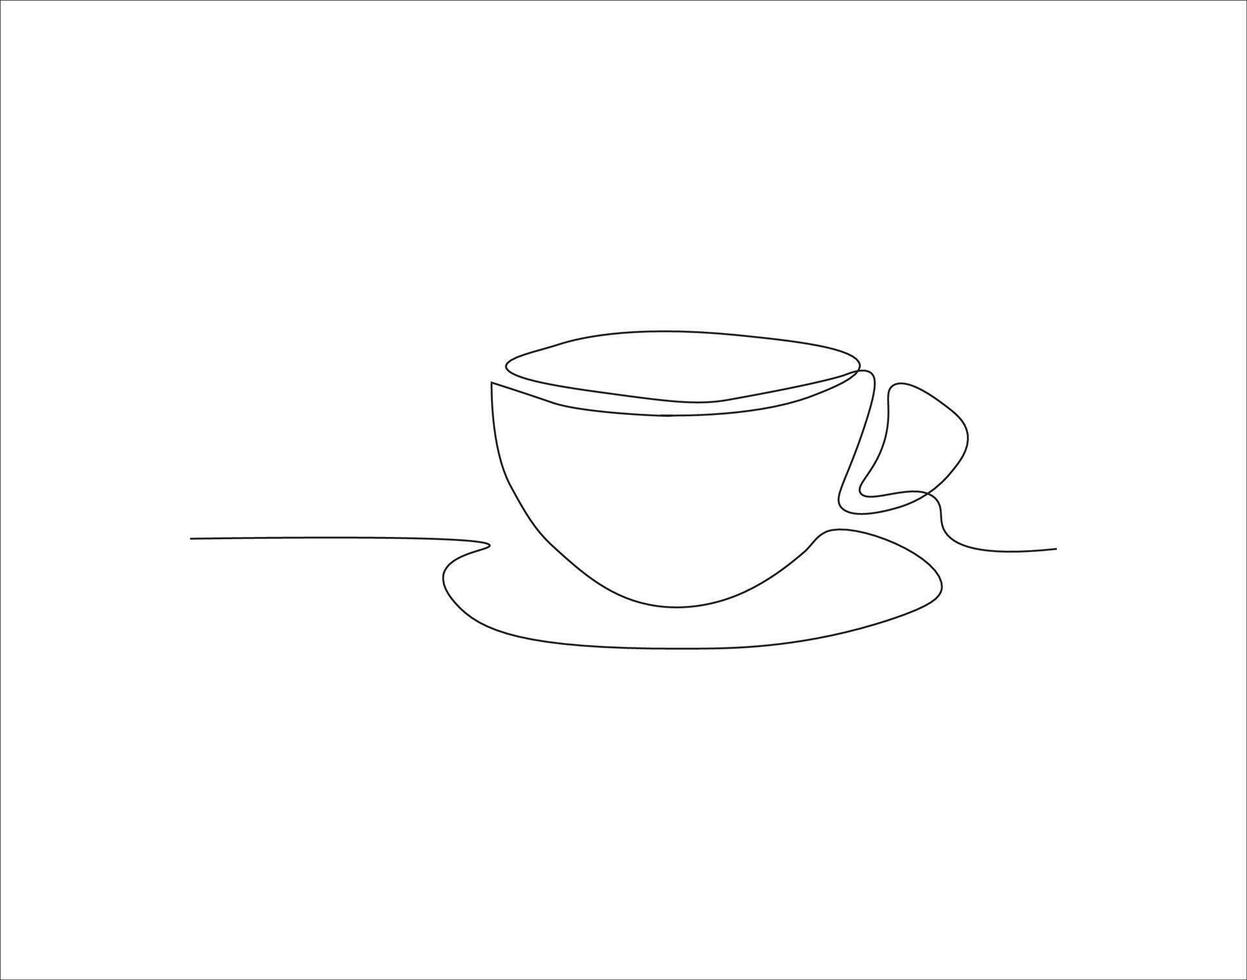 kontinuierlich Linie Zeichnung von Tasse von Kaffee. einer Linie von Kaffee. ein Tasse von Kaffee kontinuierlich Linie Kunst. editierbar Umriss. vektor